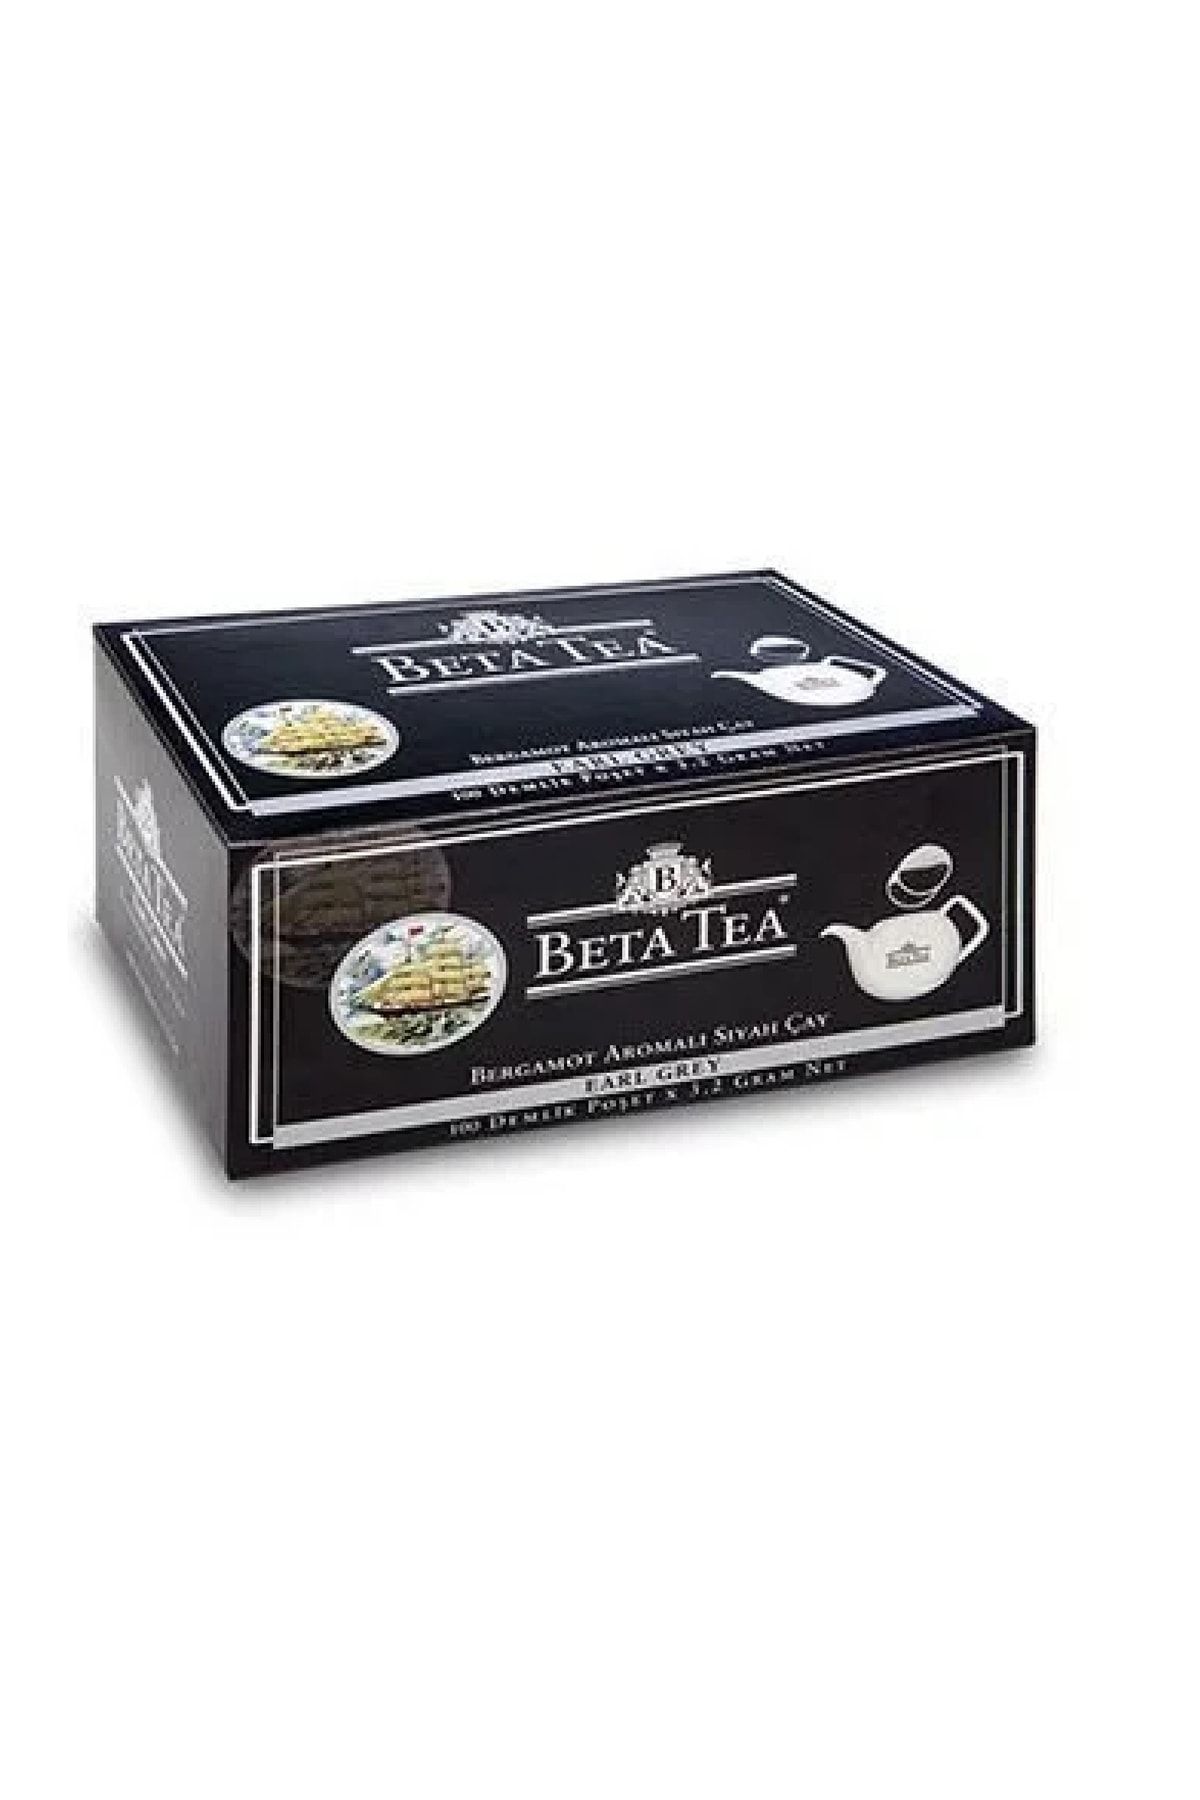 Beta Tea Earl Grey Demlik Poşet Bergamot Tomurcuk Çayı ( 100 * 3.2 Gr ) X 1 Paket ( 100 Adet Demlik Çay )